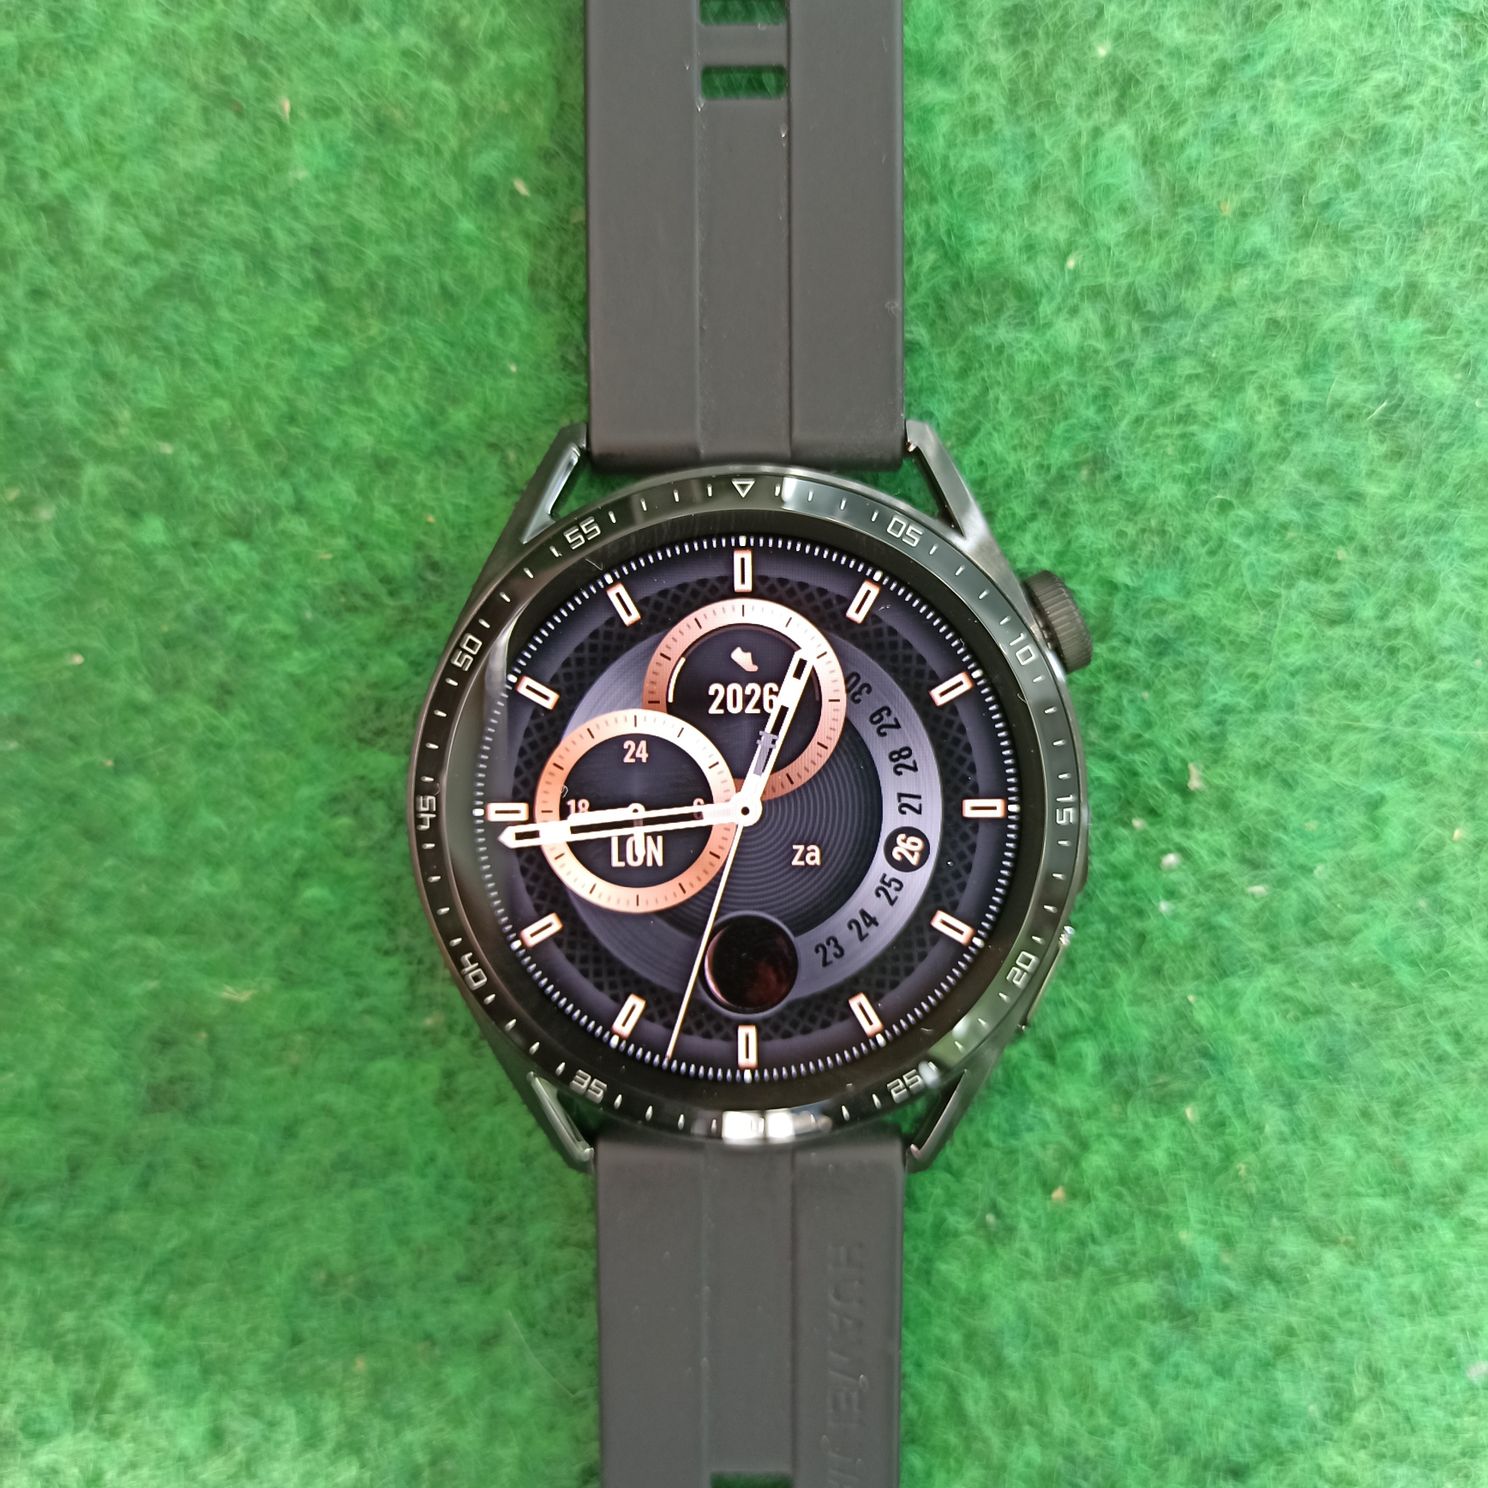 Huawei Watch GT 3 review: dit vonden twee Androidworldlezers van de smartwatch (adv)